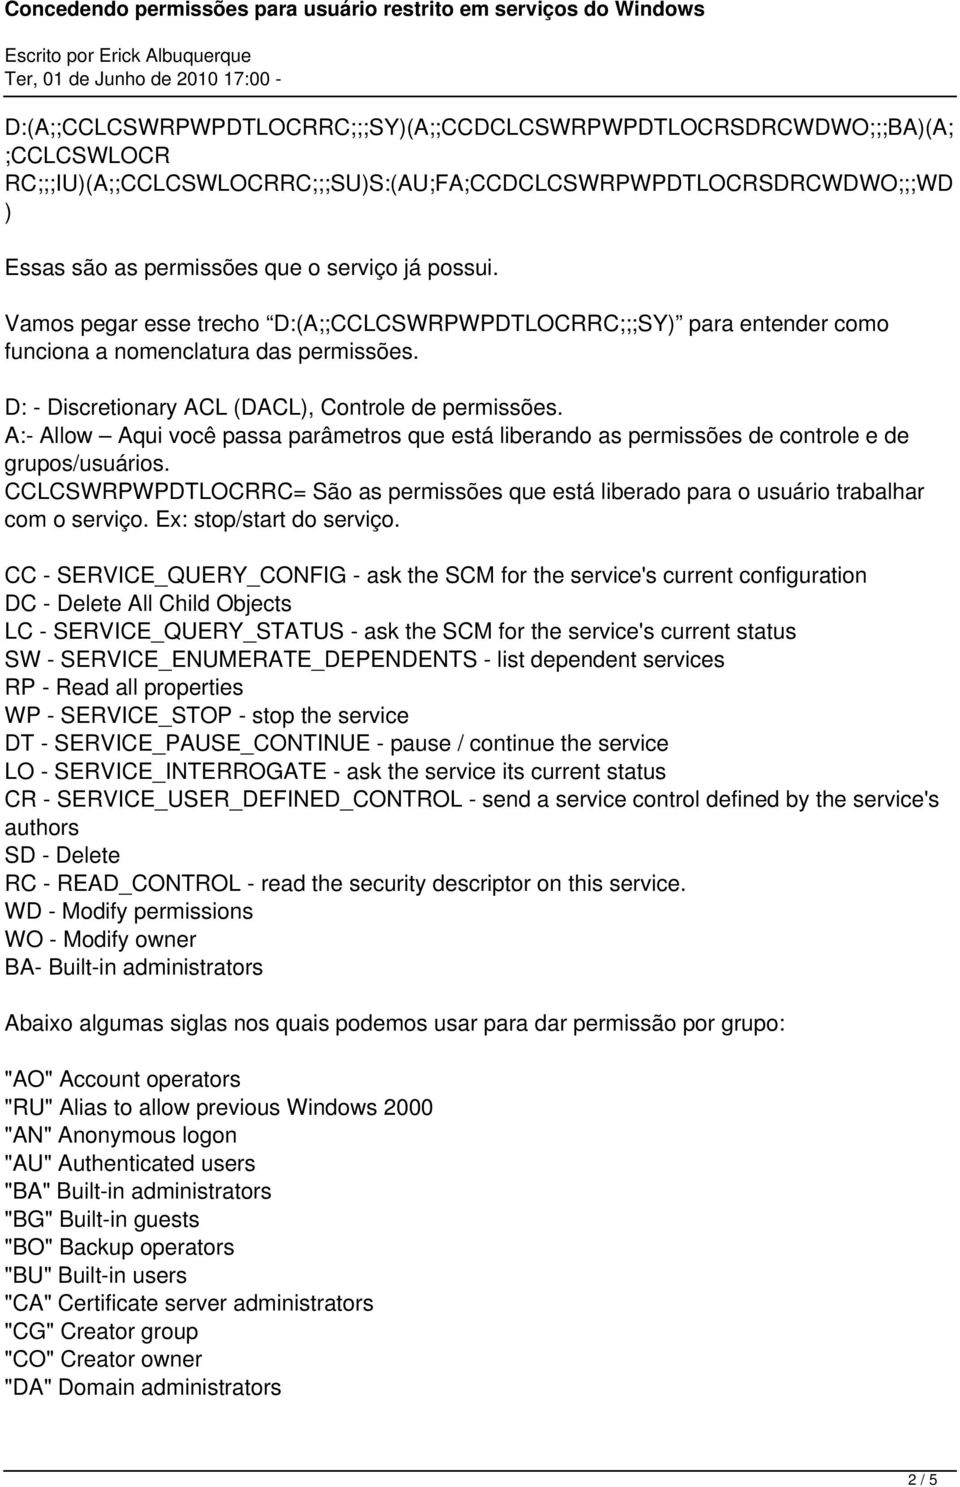 CCLCSWRPWPDTLOCRRC= São as permissões que está liberado para o usuário trabalhar com o serviço. Ex: stop/start do serviço.